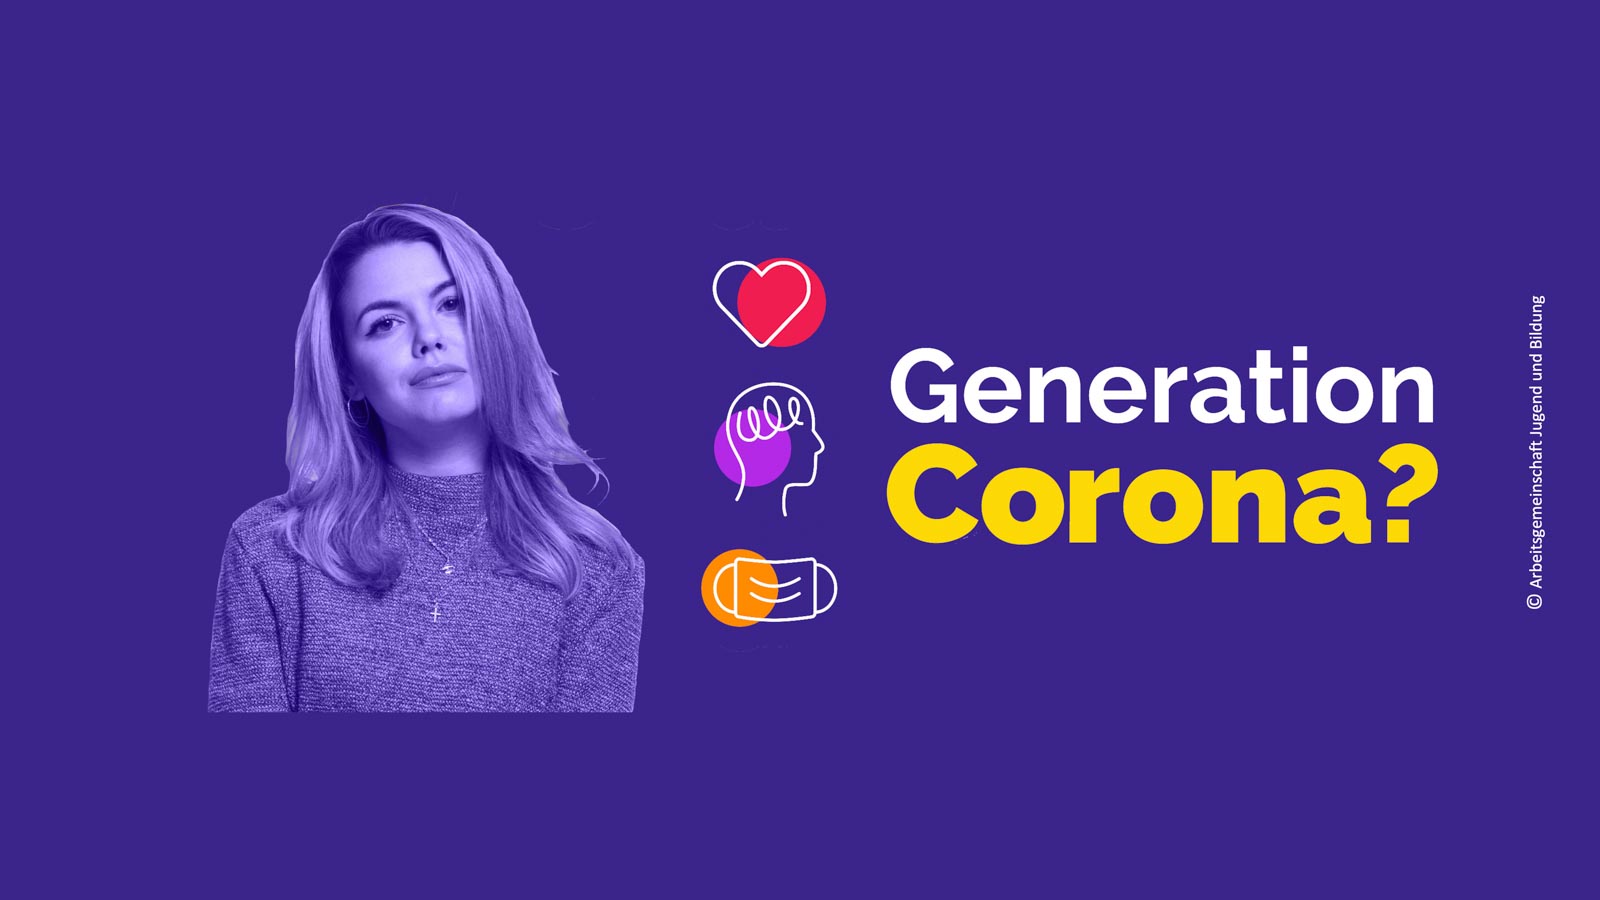 Generation Corona?